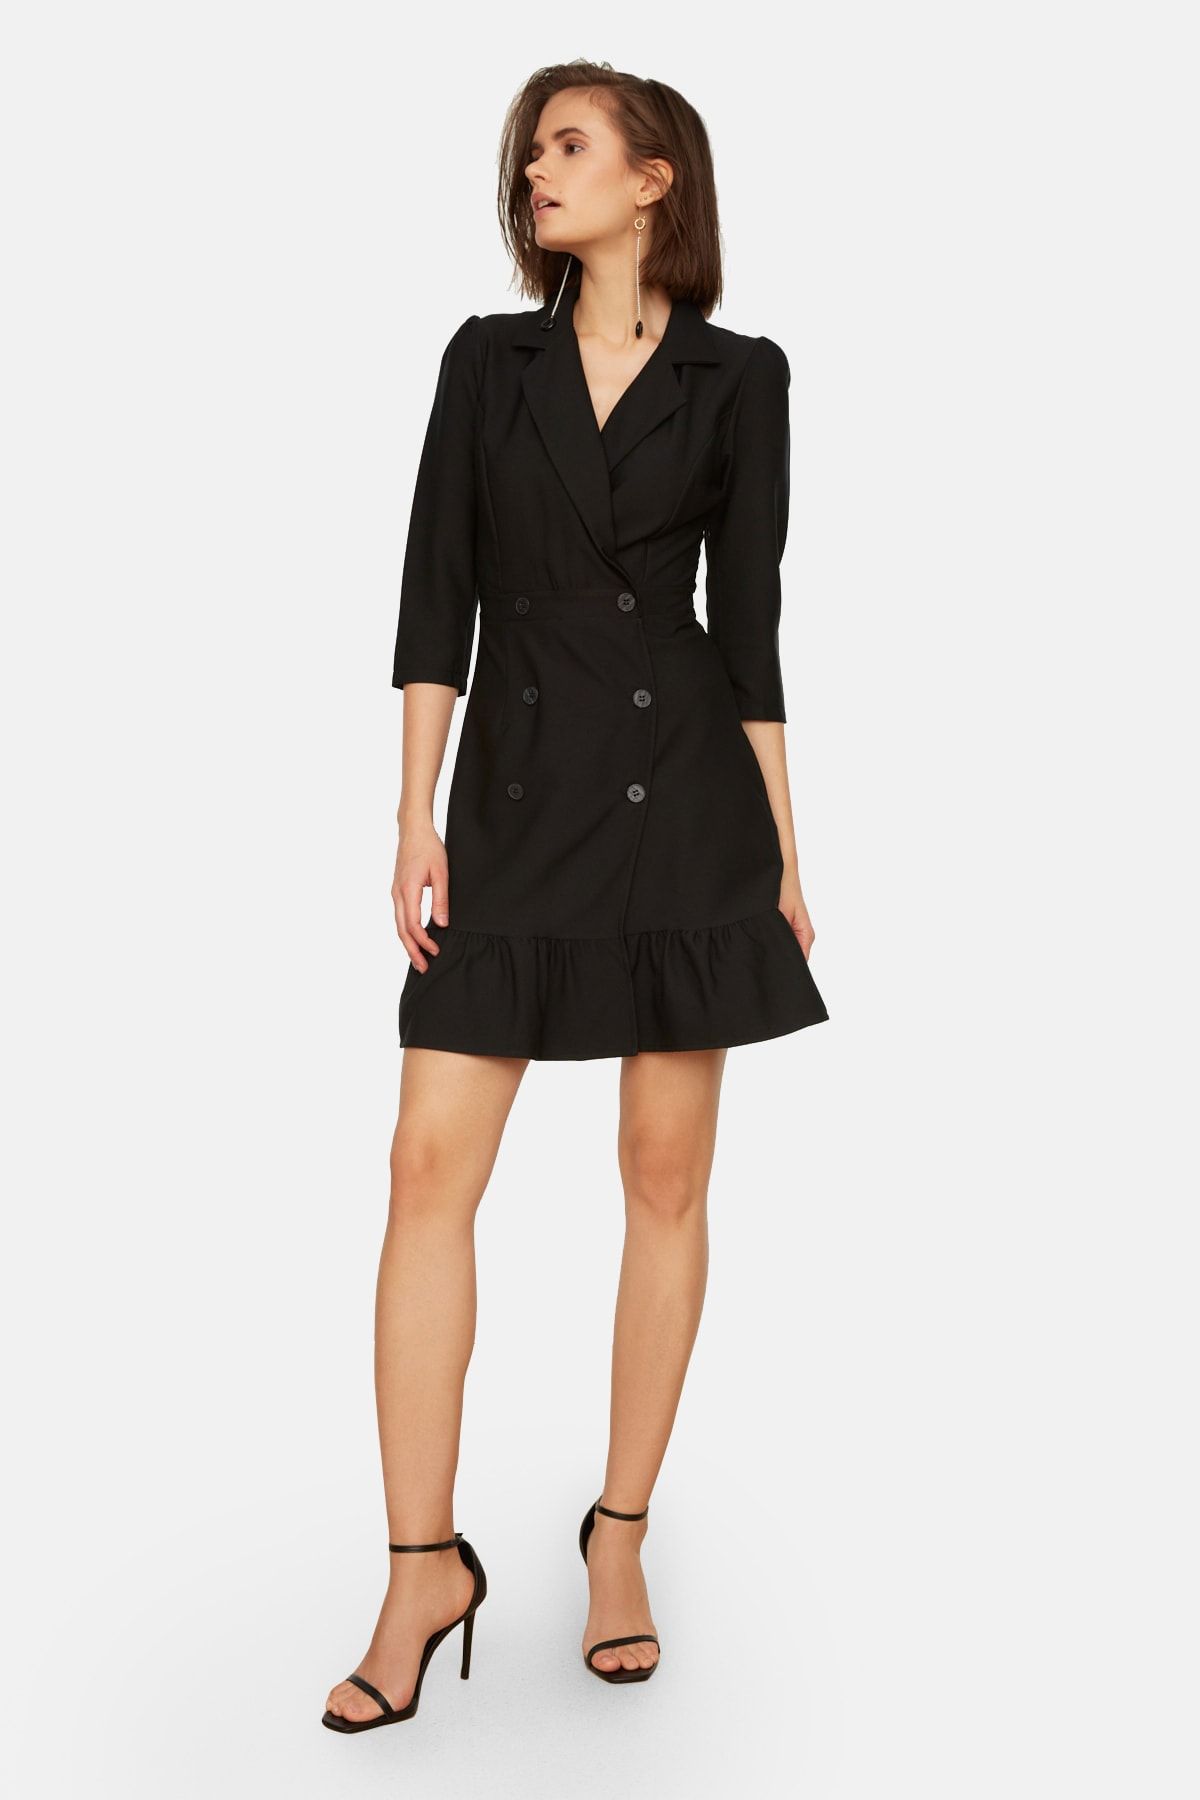 TRENDYOLMİLLA Siyah Düğme Detaylı Mini Dokuma Ceket Elbise TWOSS20EL0407